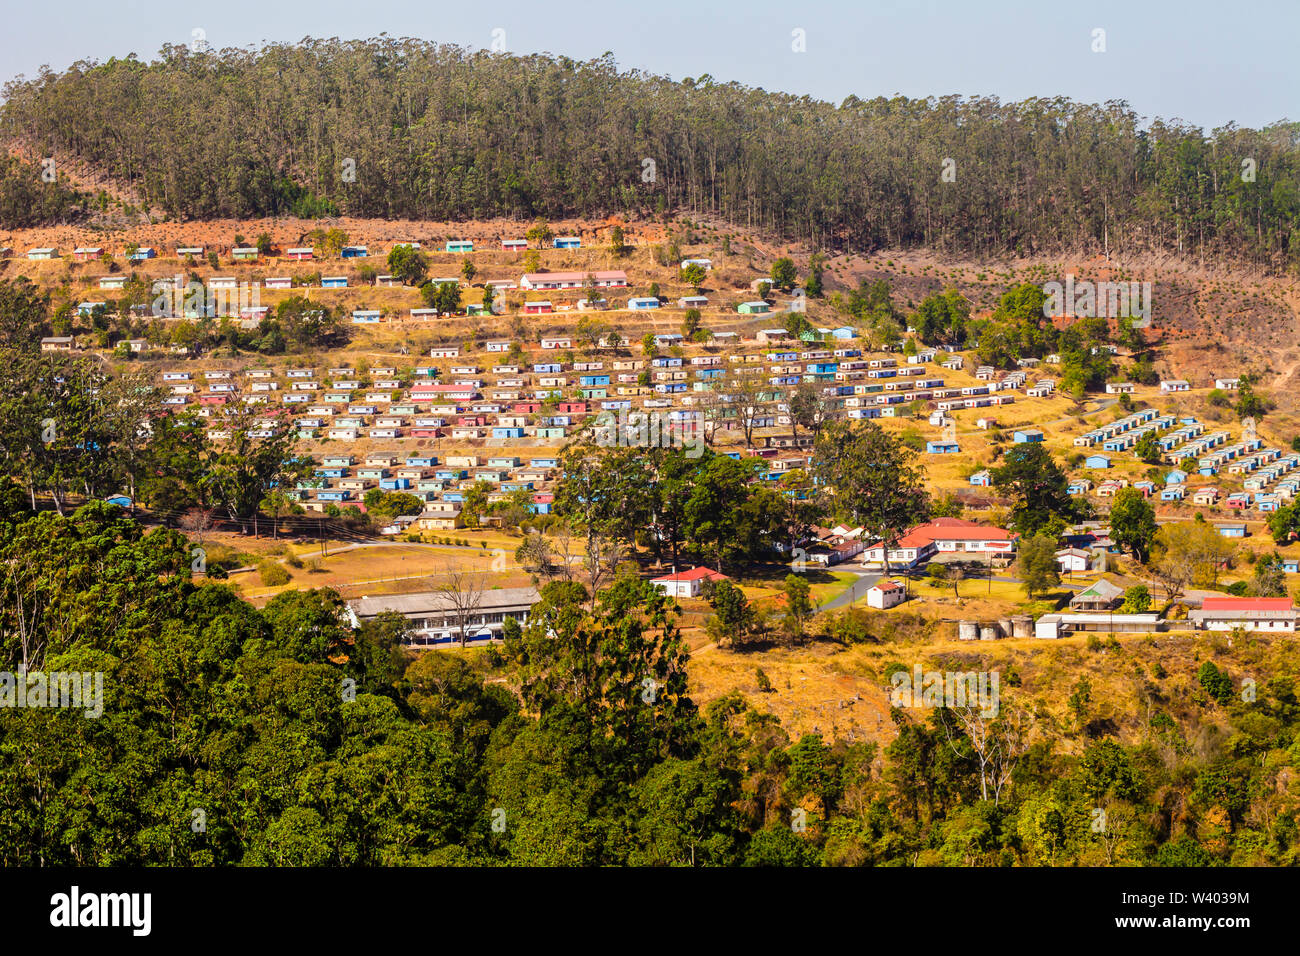 Vista panoramica del tipico villaggio con case colorate disposte in modo geometrico, Swaziland, Sud Africa Foto Stock